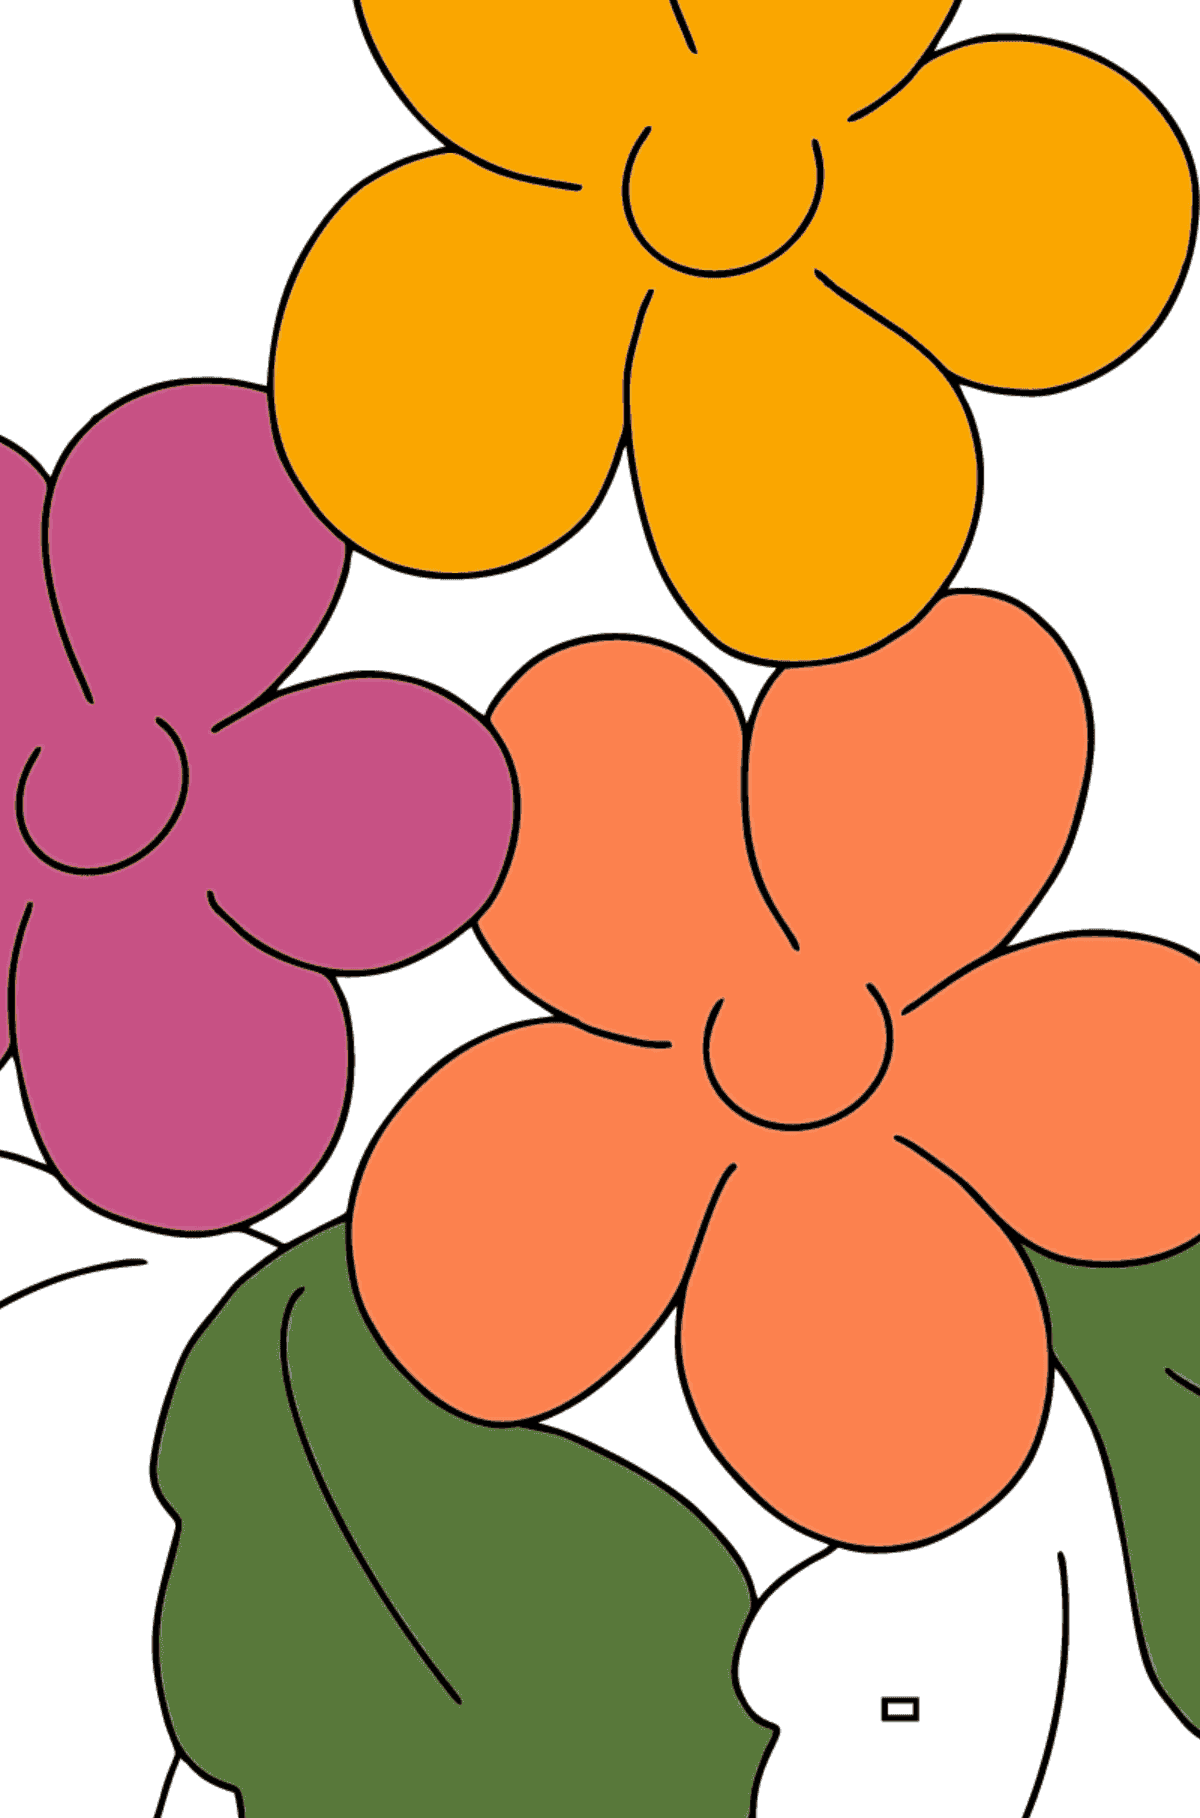 Ausmalbild - Frühling und Blumen - Ausmalen nach Geometrischen Formen für Kinder